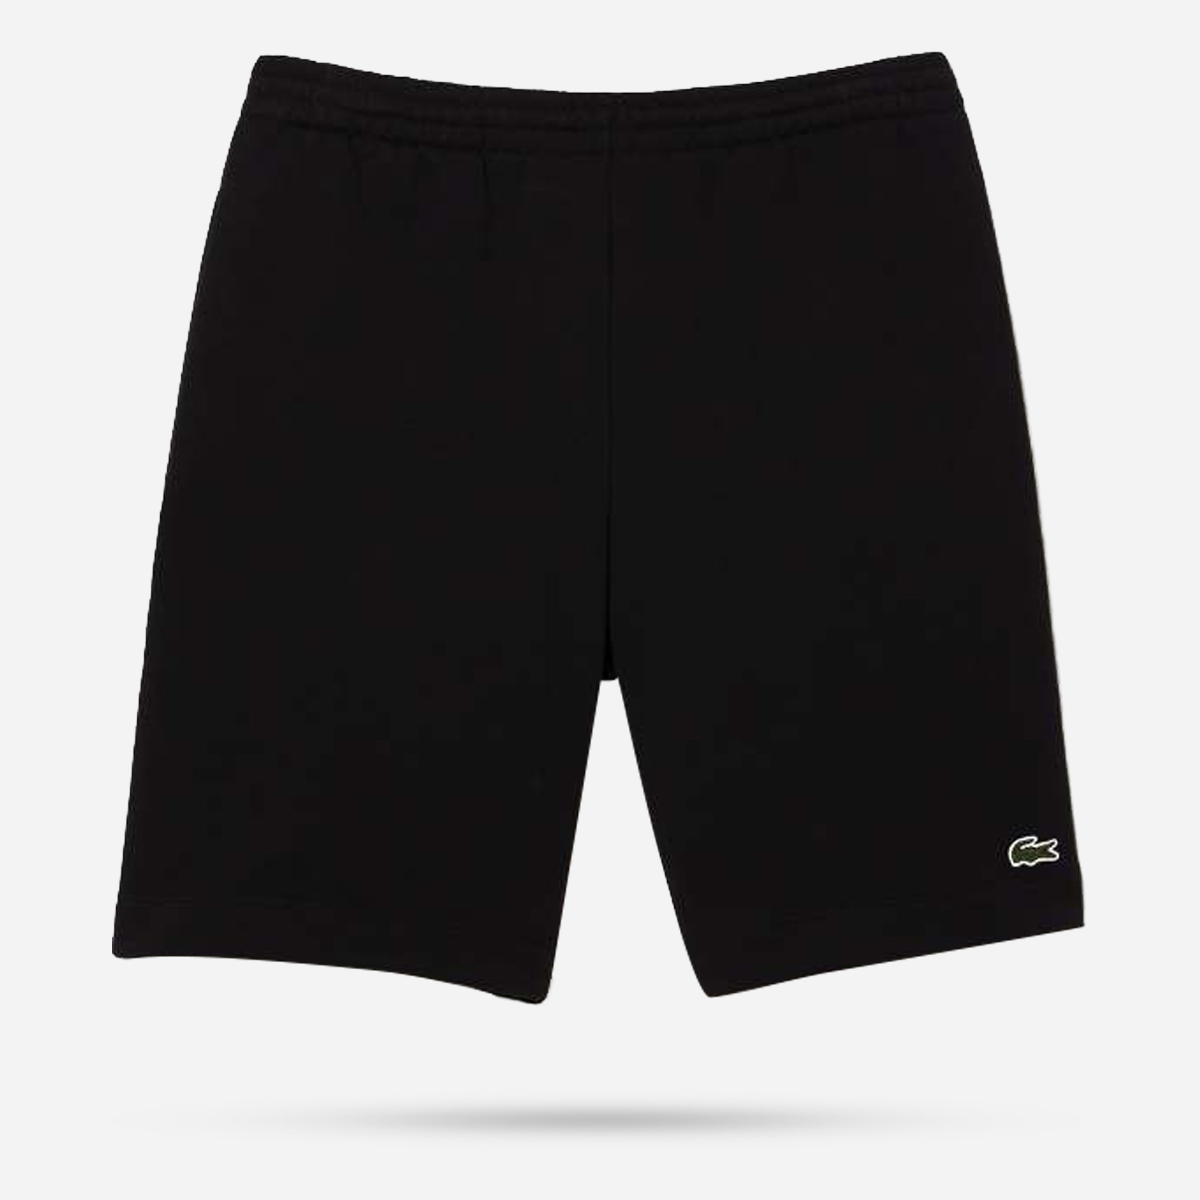 AN297430 1HG1 Men's shorts 01